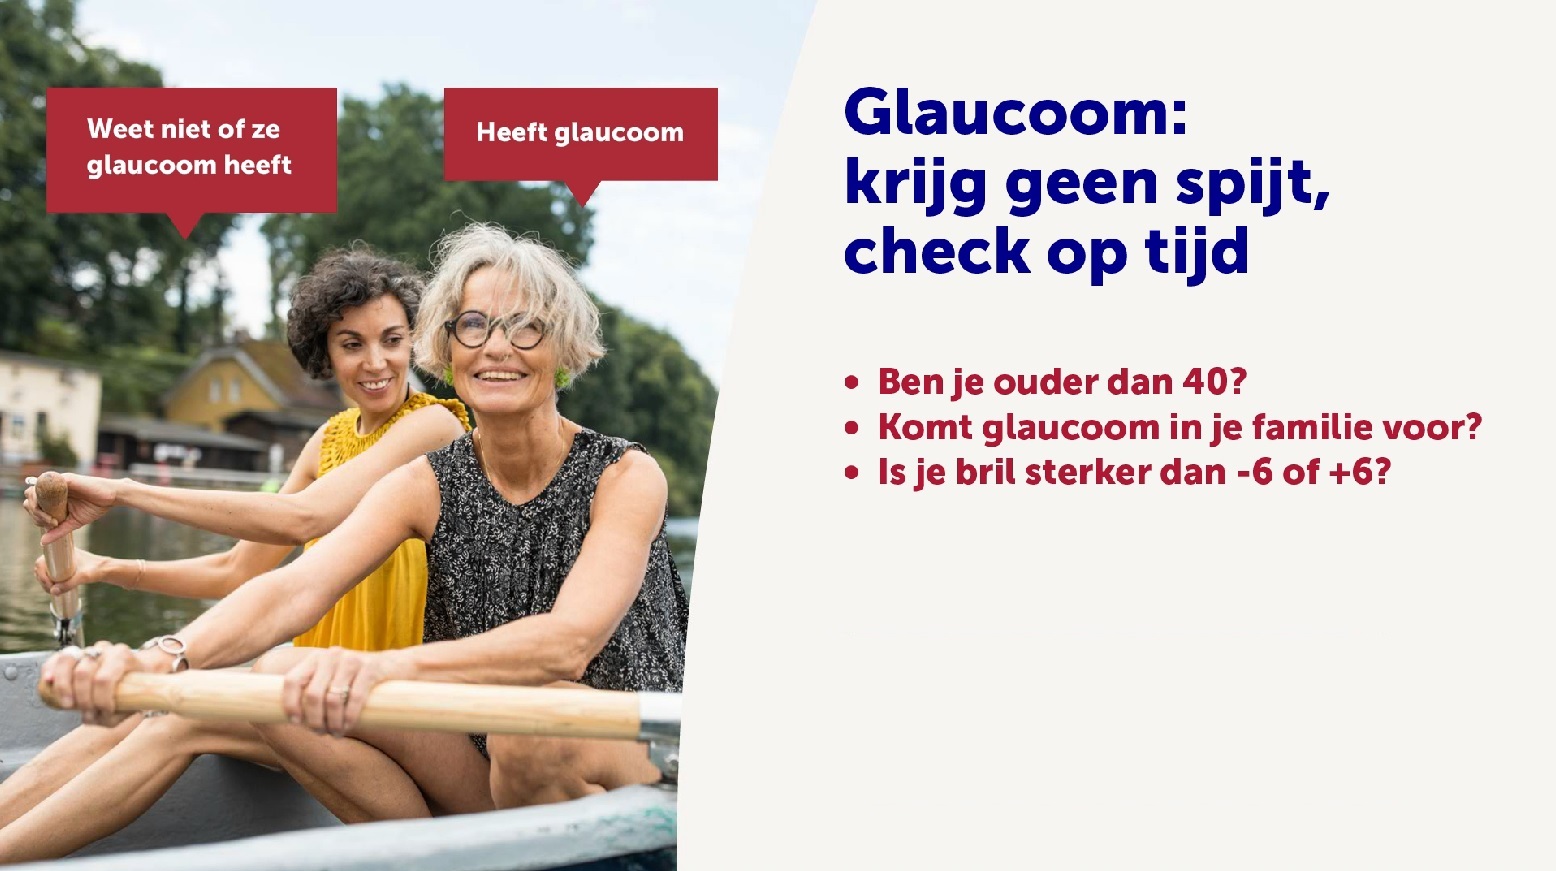 Internationale Glaucoomweek: Krijg geen spijt, check op tijd!